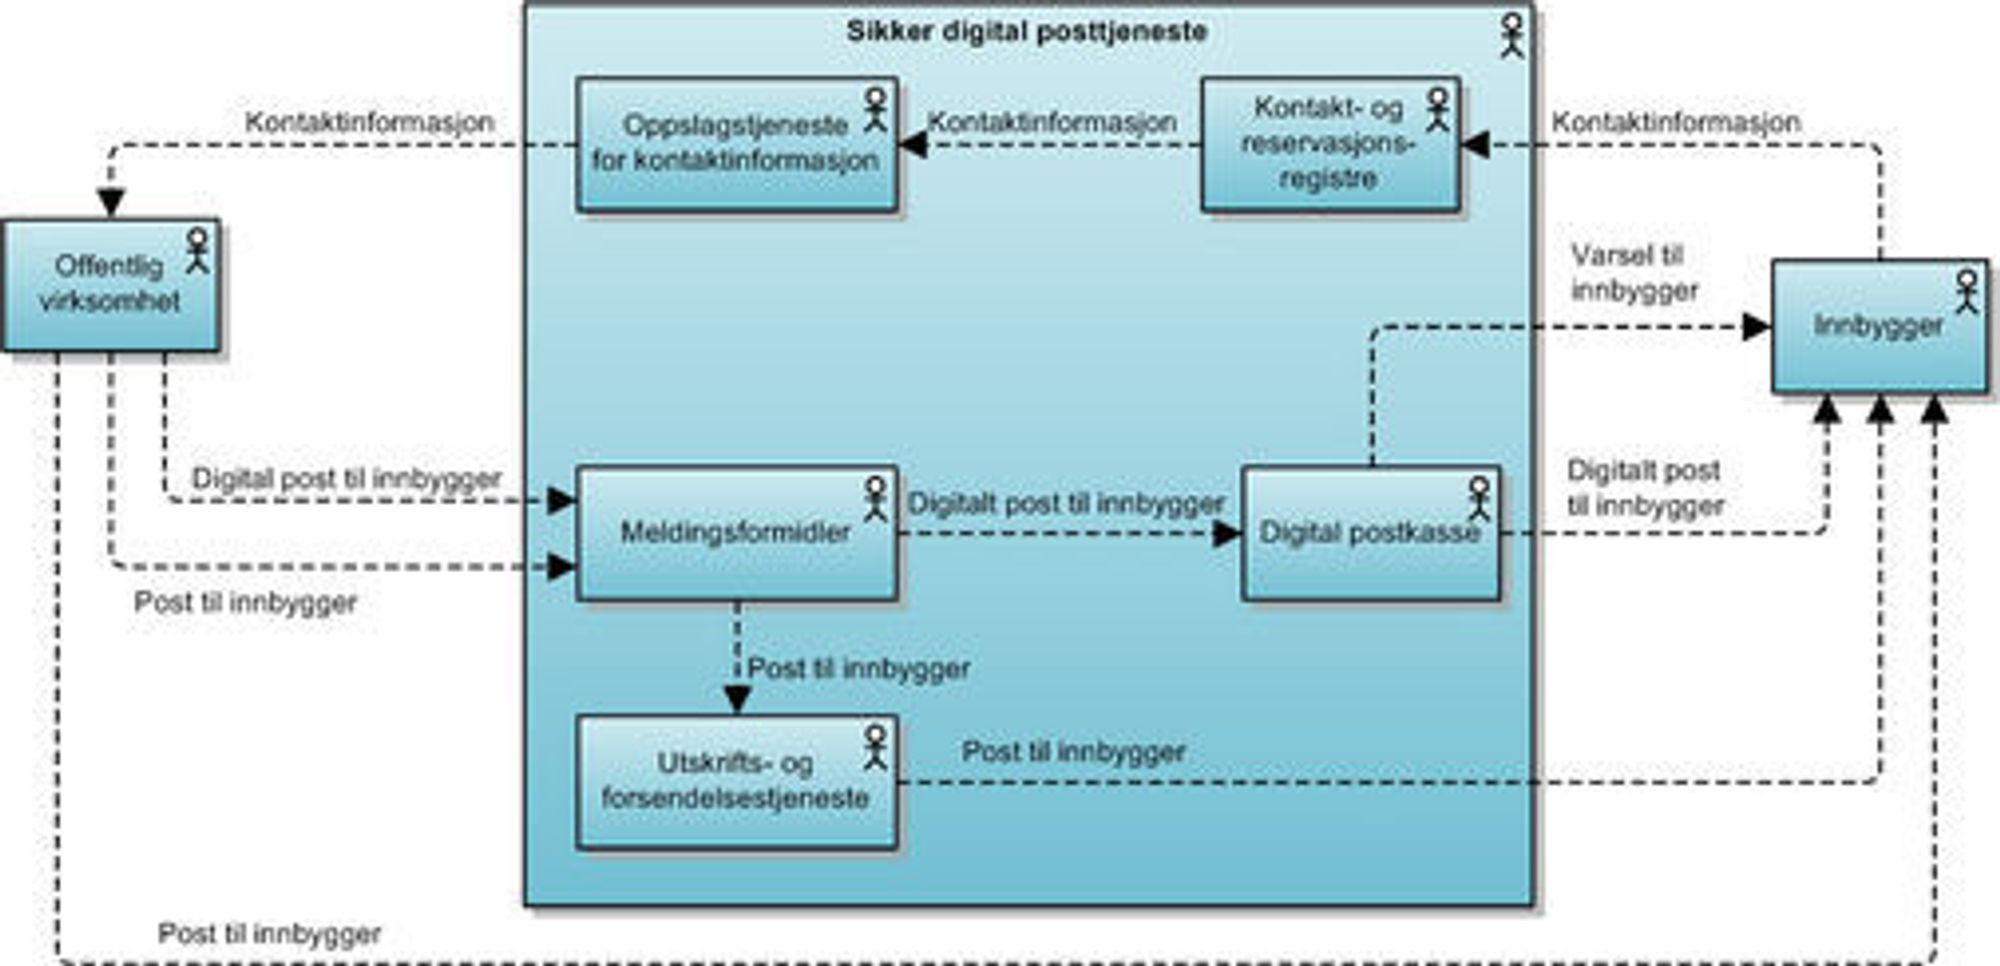 Her illustreres hvordan den sikre digitale postkassen skal organiseres. 